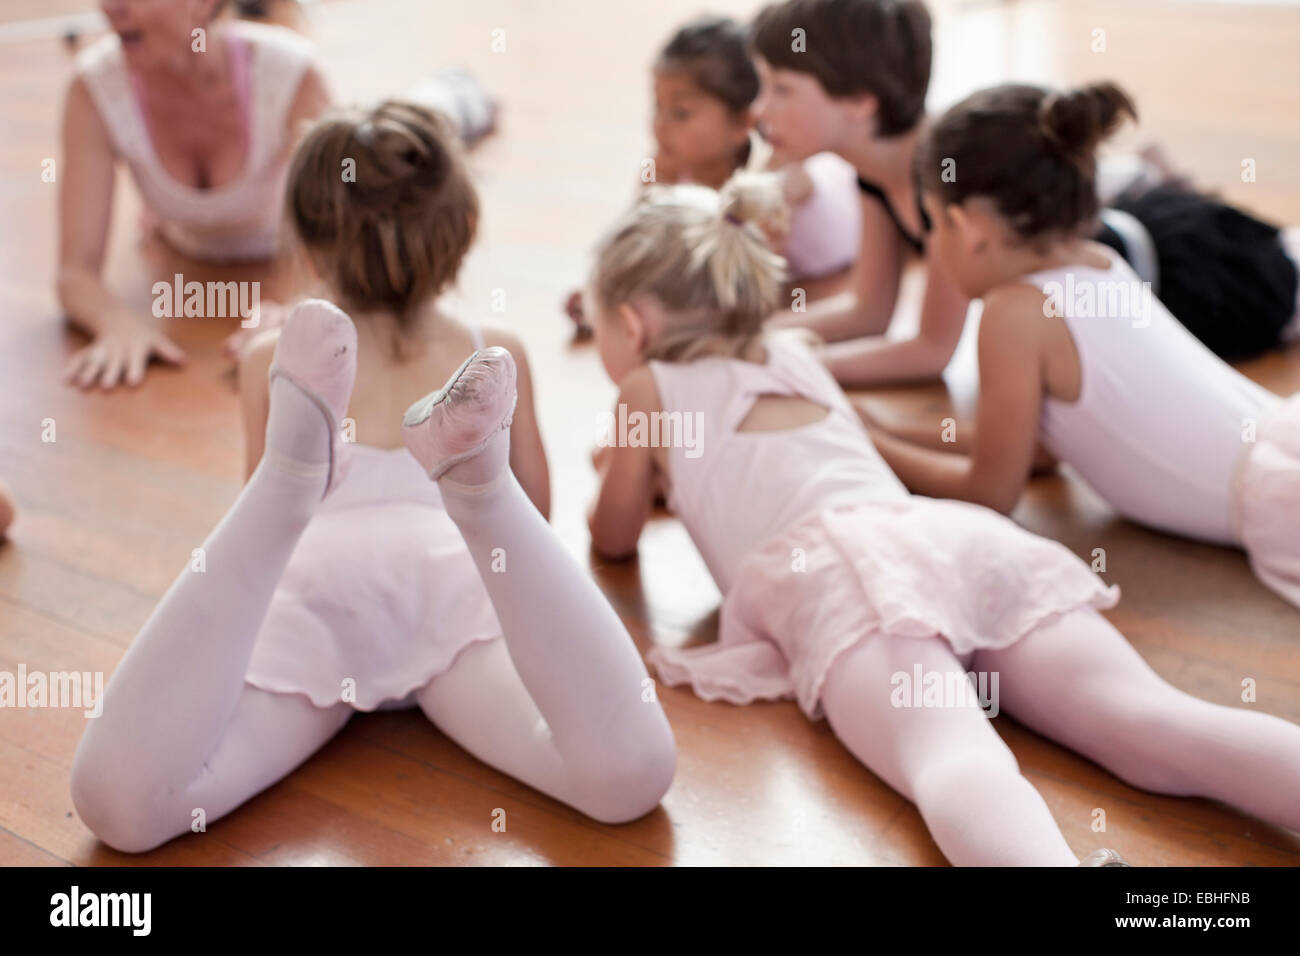 Children lying on floor practicing ballet in ballet school Banque D'Images